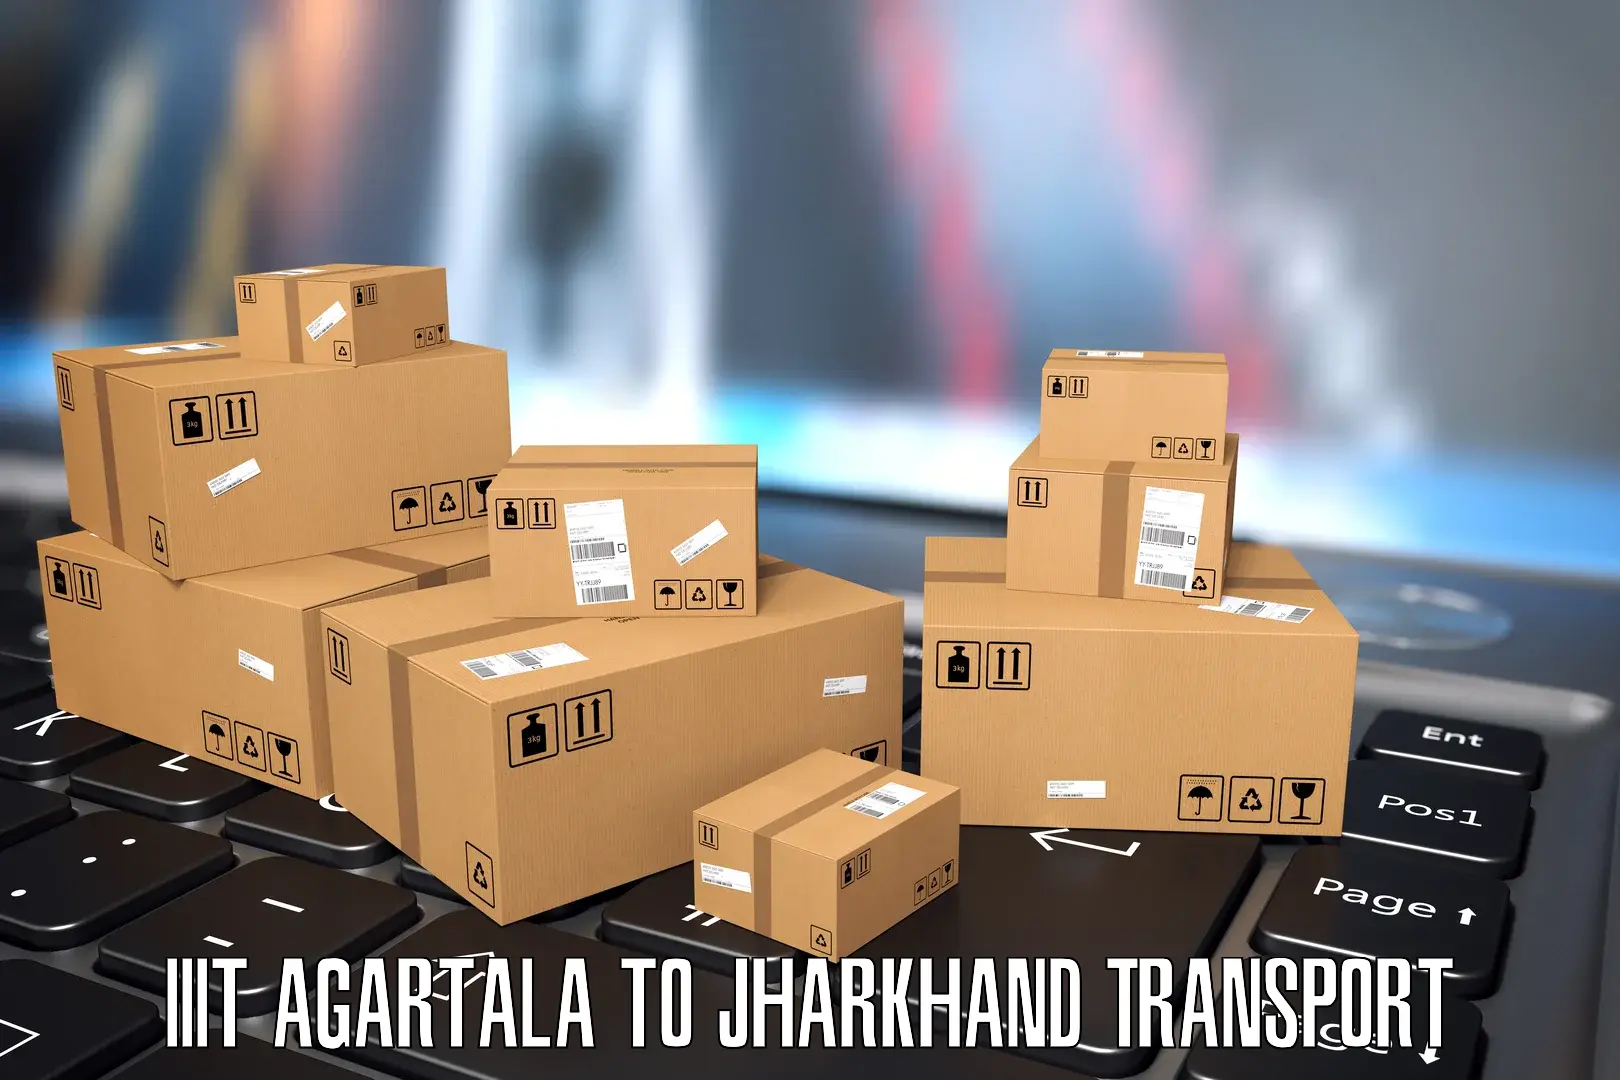 Truck transport companies in India in IIIT Agartala to Ghatshila